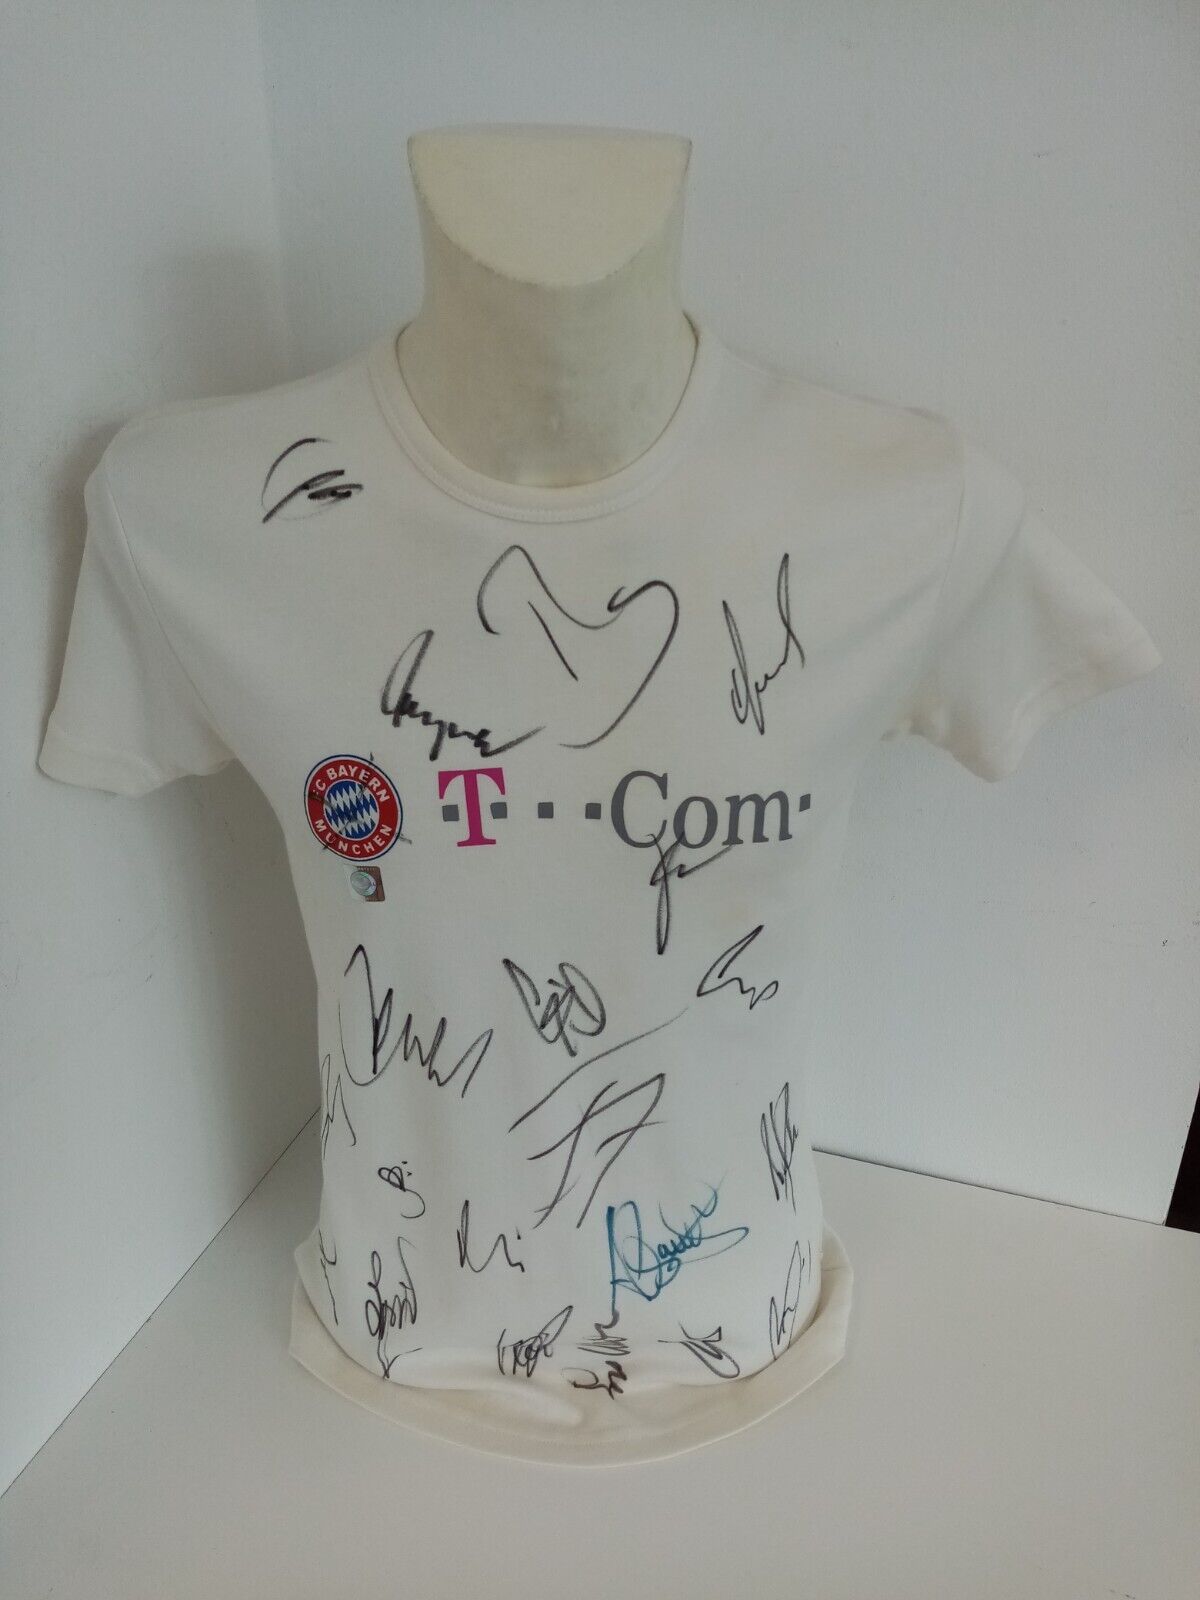 FC Bayern München Shirt 2004/2005 Teamsigniert Autogramm Fußball Unterschrift M